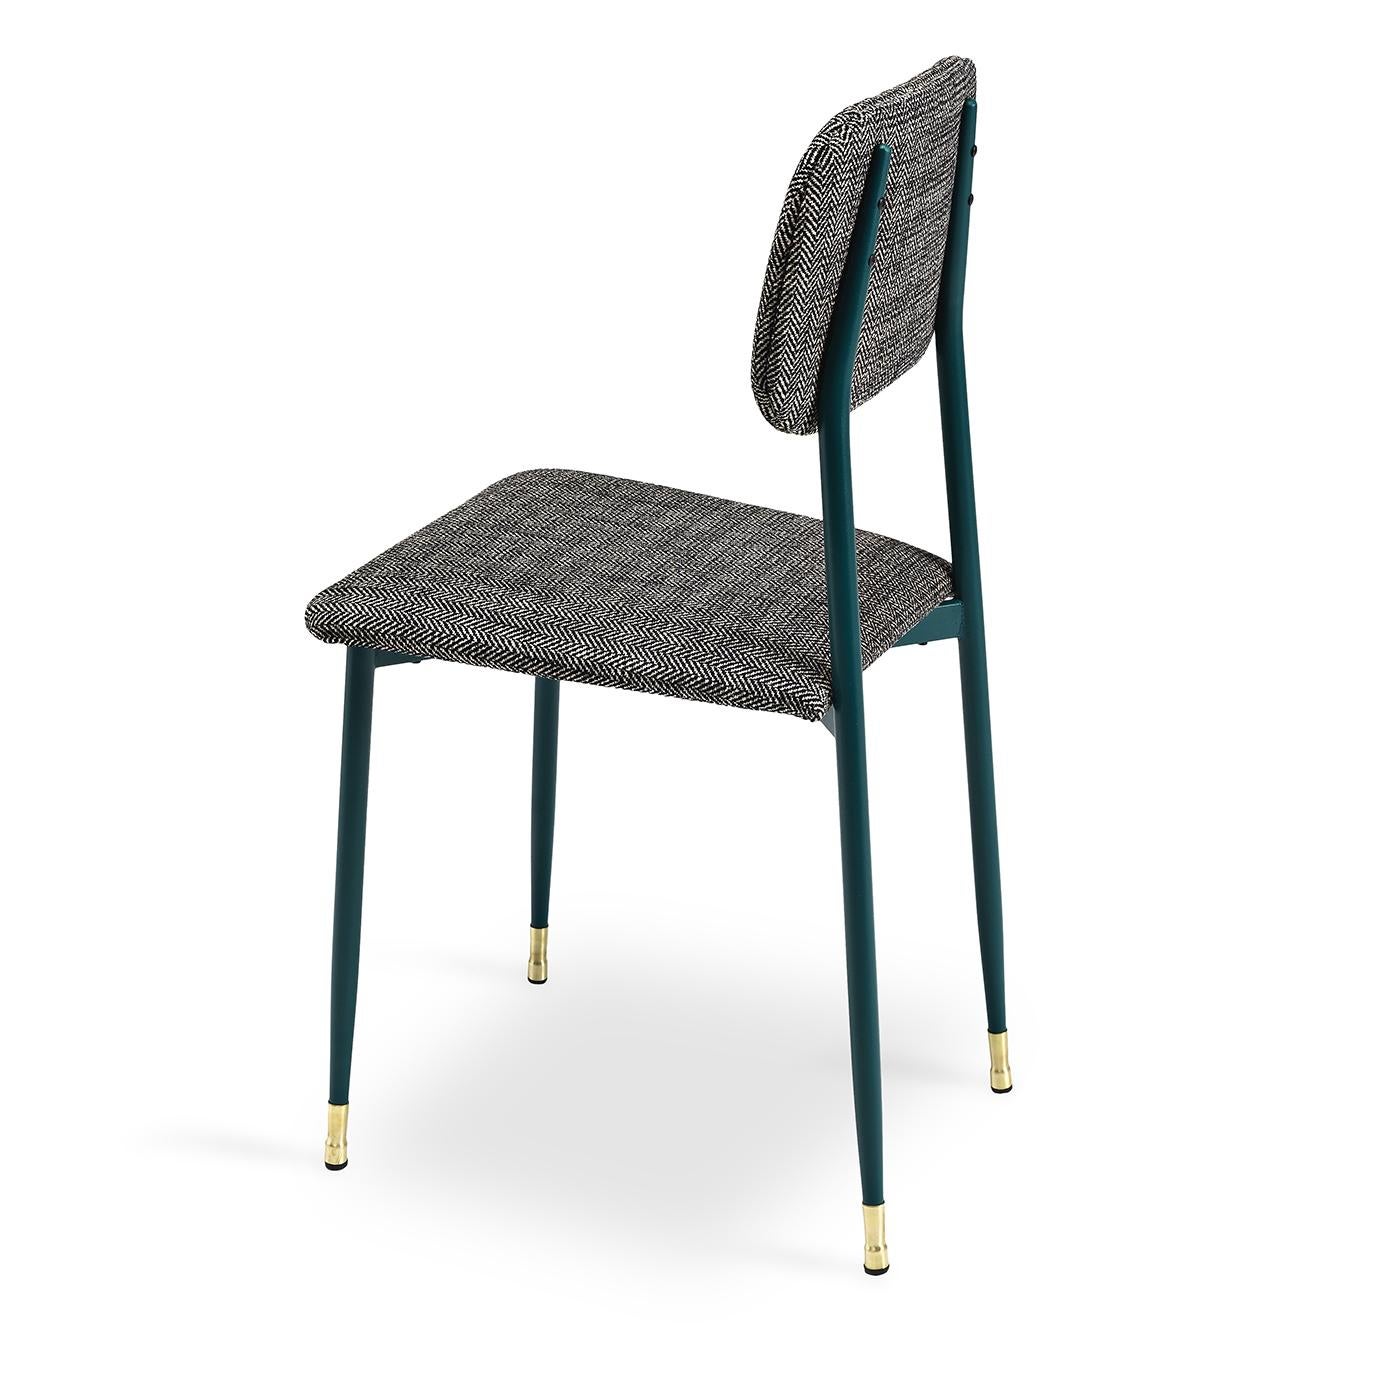 Setzen Sie sich auf diesen niedlichen kleinen Esszimmerstuhl mit Vintage-Flair an den Tisch. Der schlichte Metallrahmen und die Beine des Stuhls sind in einem dunklen Grün gehalten, und dekorative Stuhlführungen aus Messing vervollständigen die